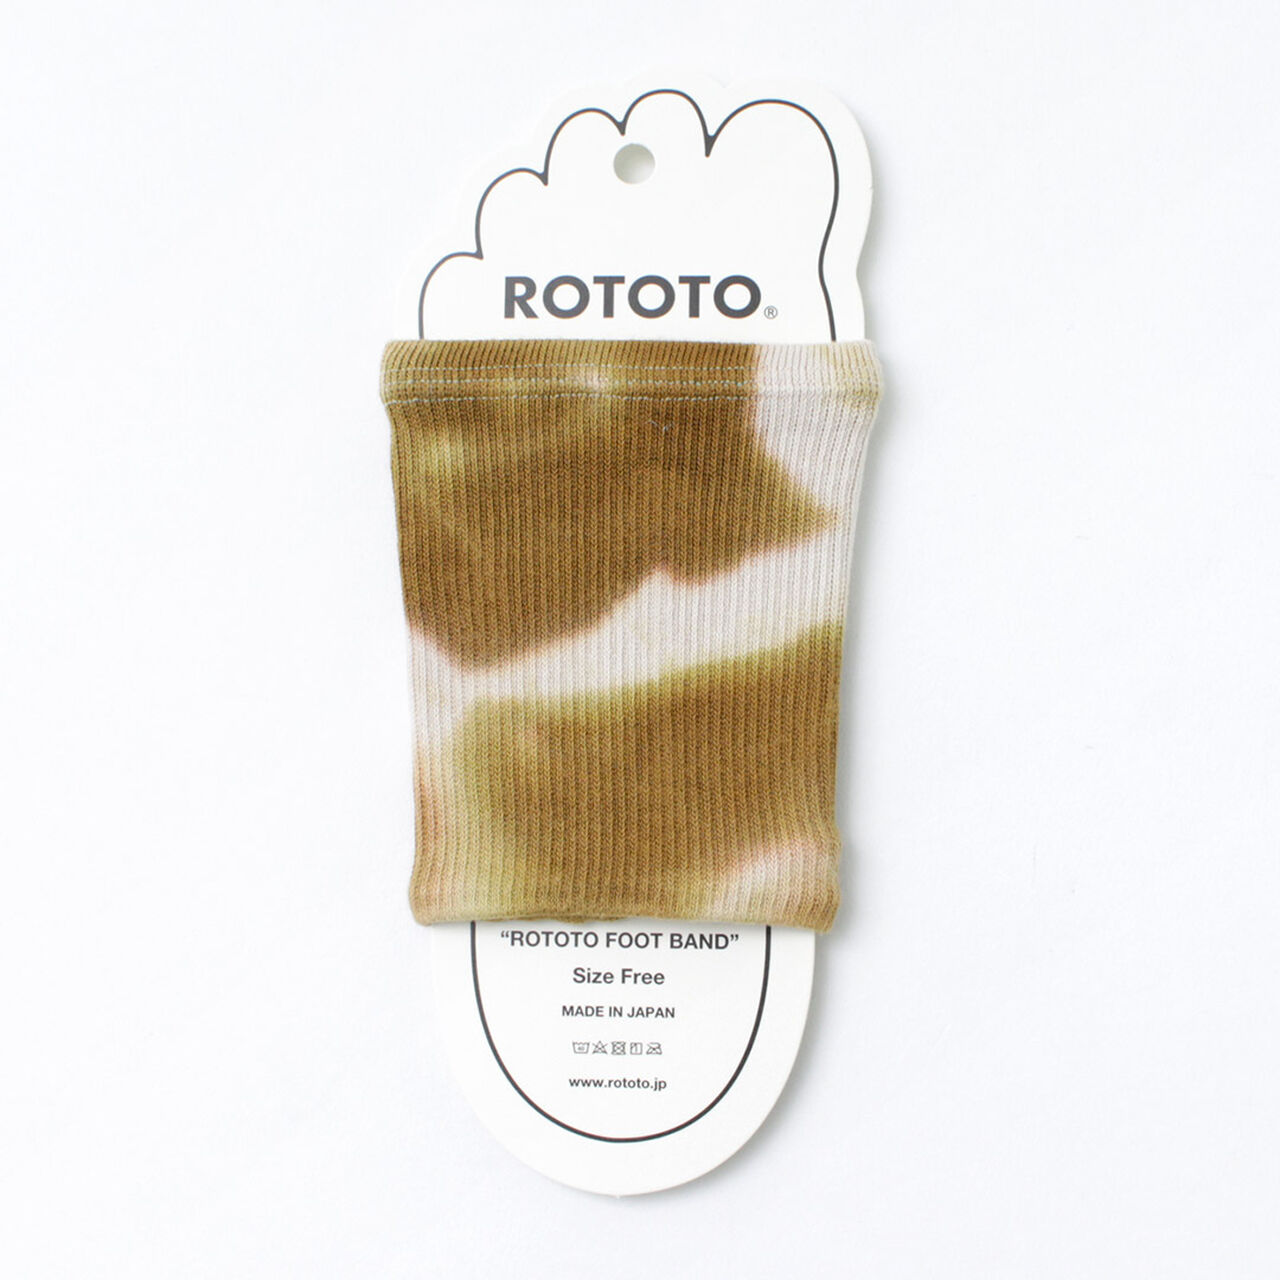 R1314 Foot Band Tie Dye Sandal Socks Socks,LightBrown_Beige, large image number 0